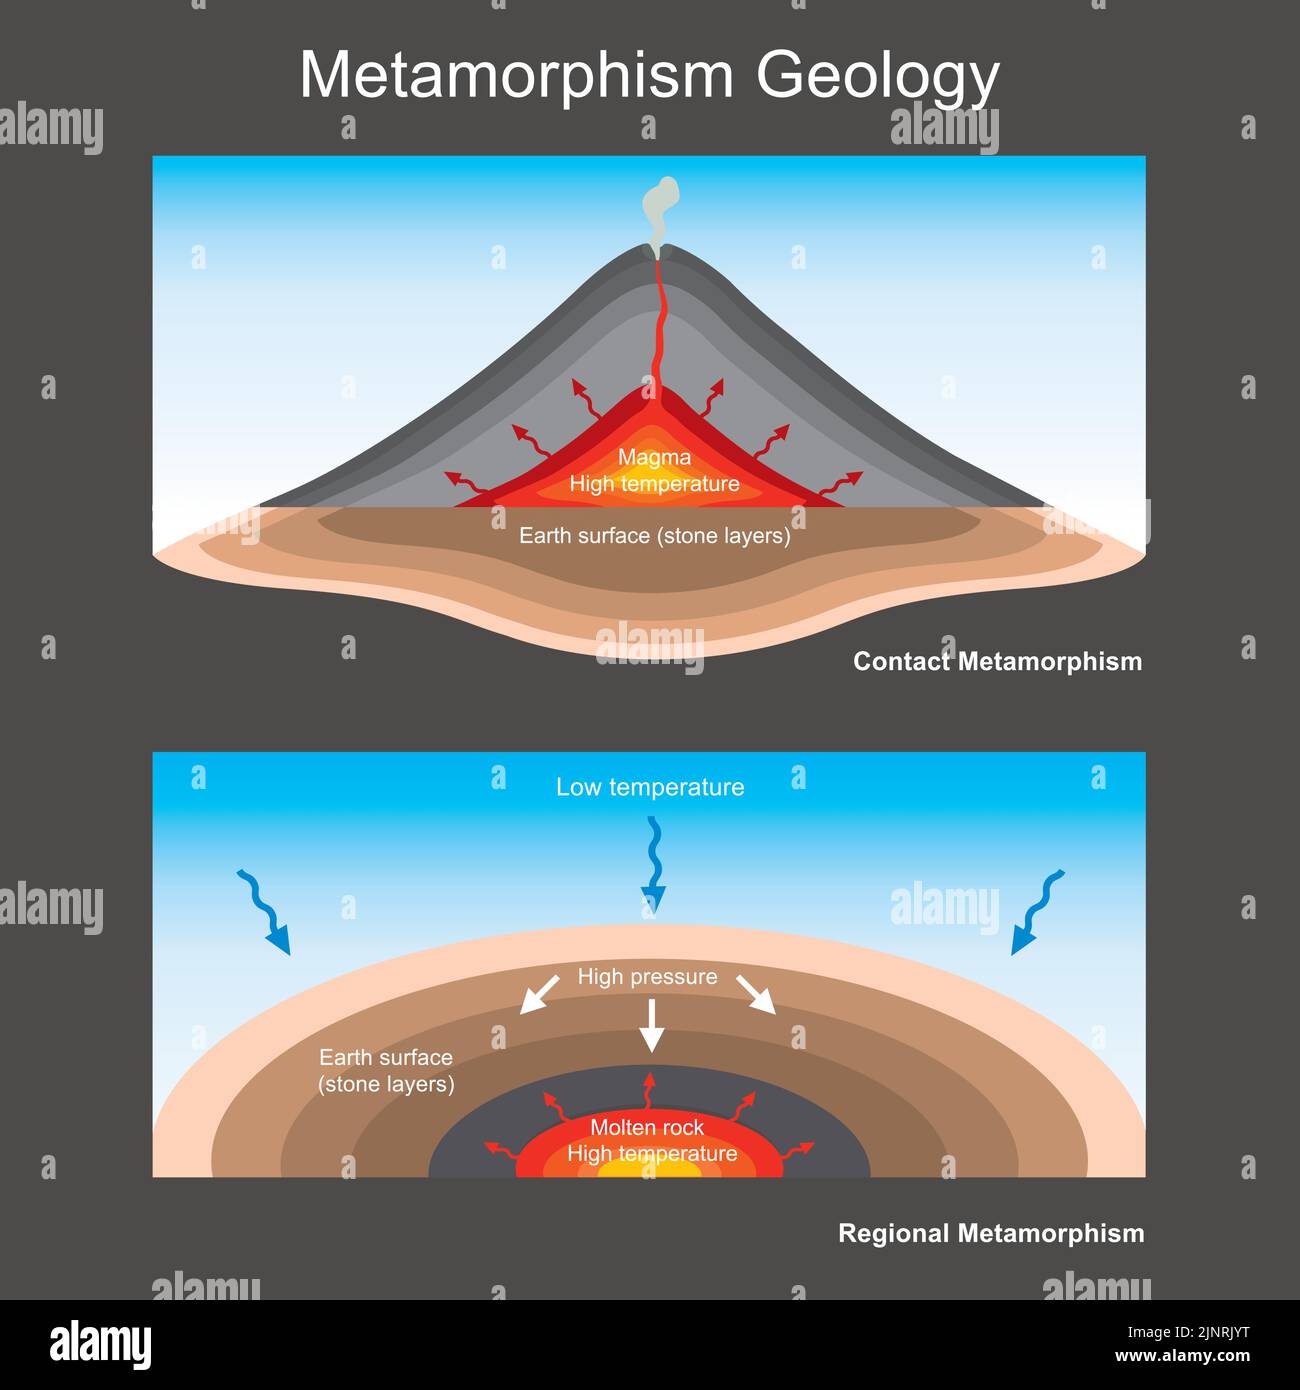 metamorphism geology. illustration for explain geology education the metamorphism of stone layers. Stock Vector